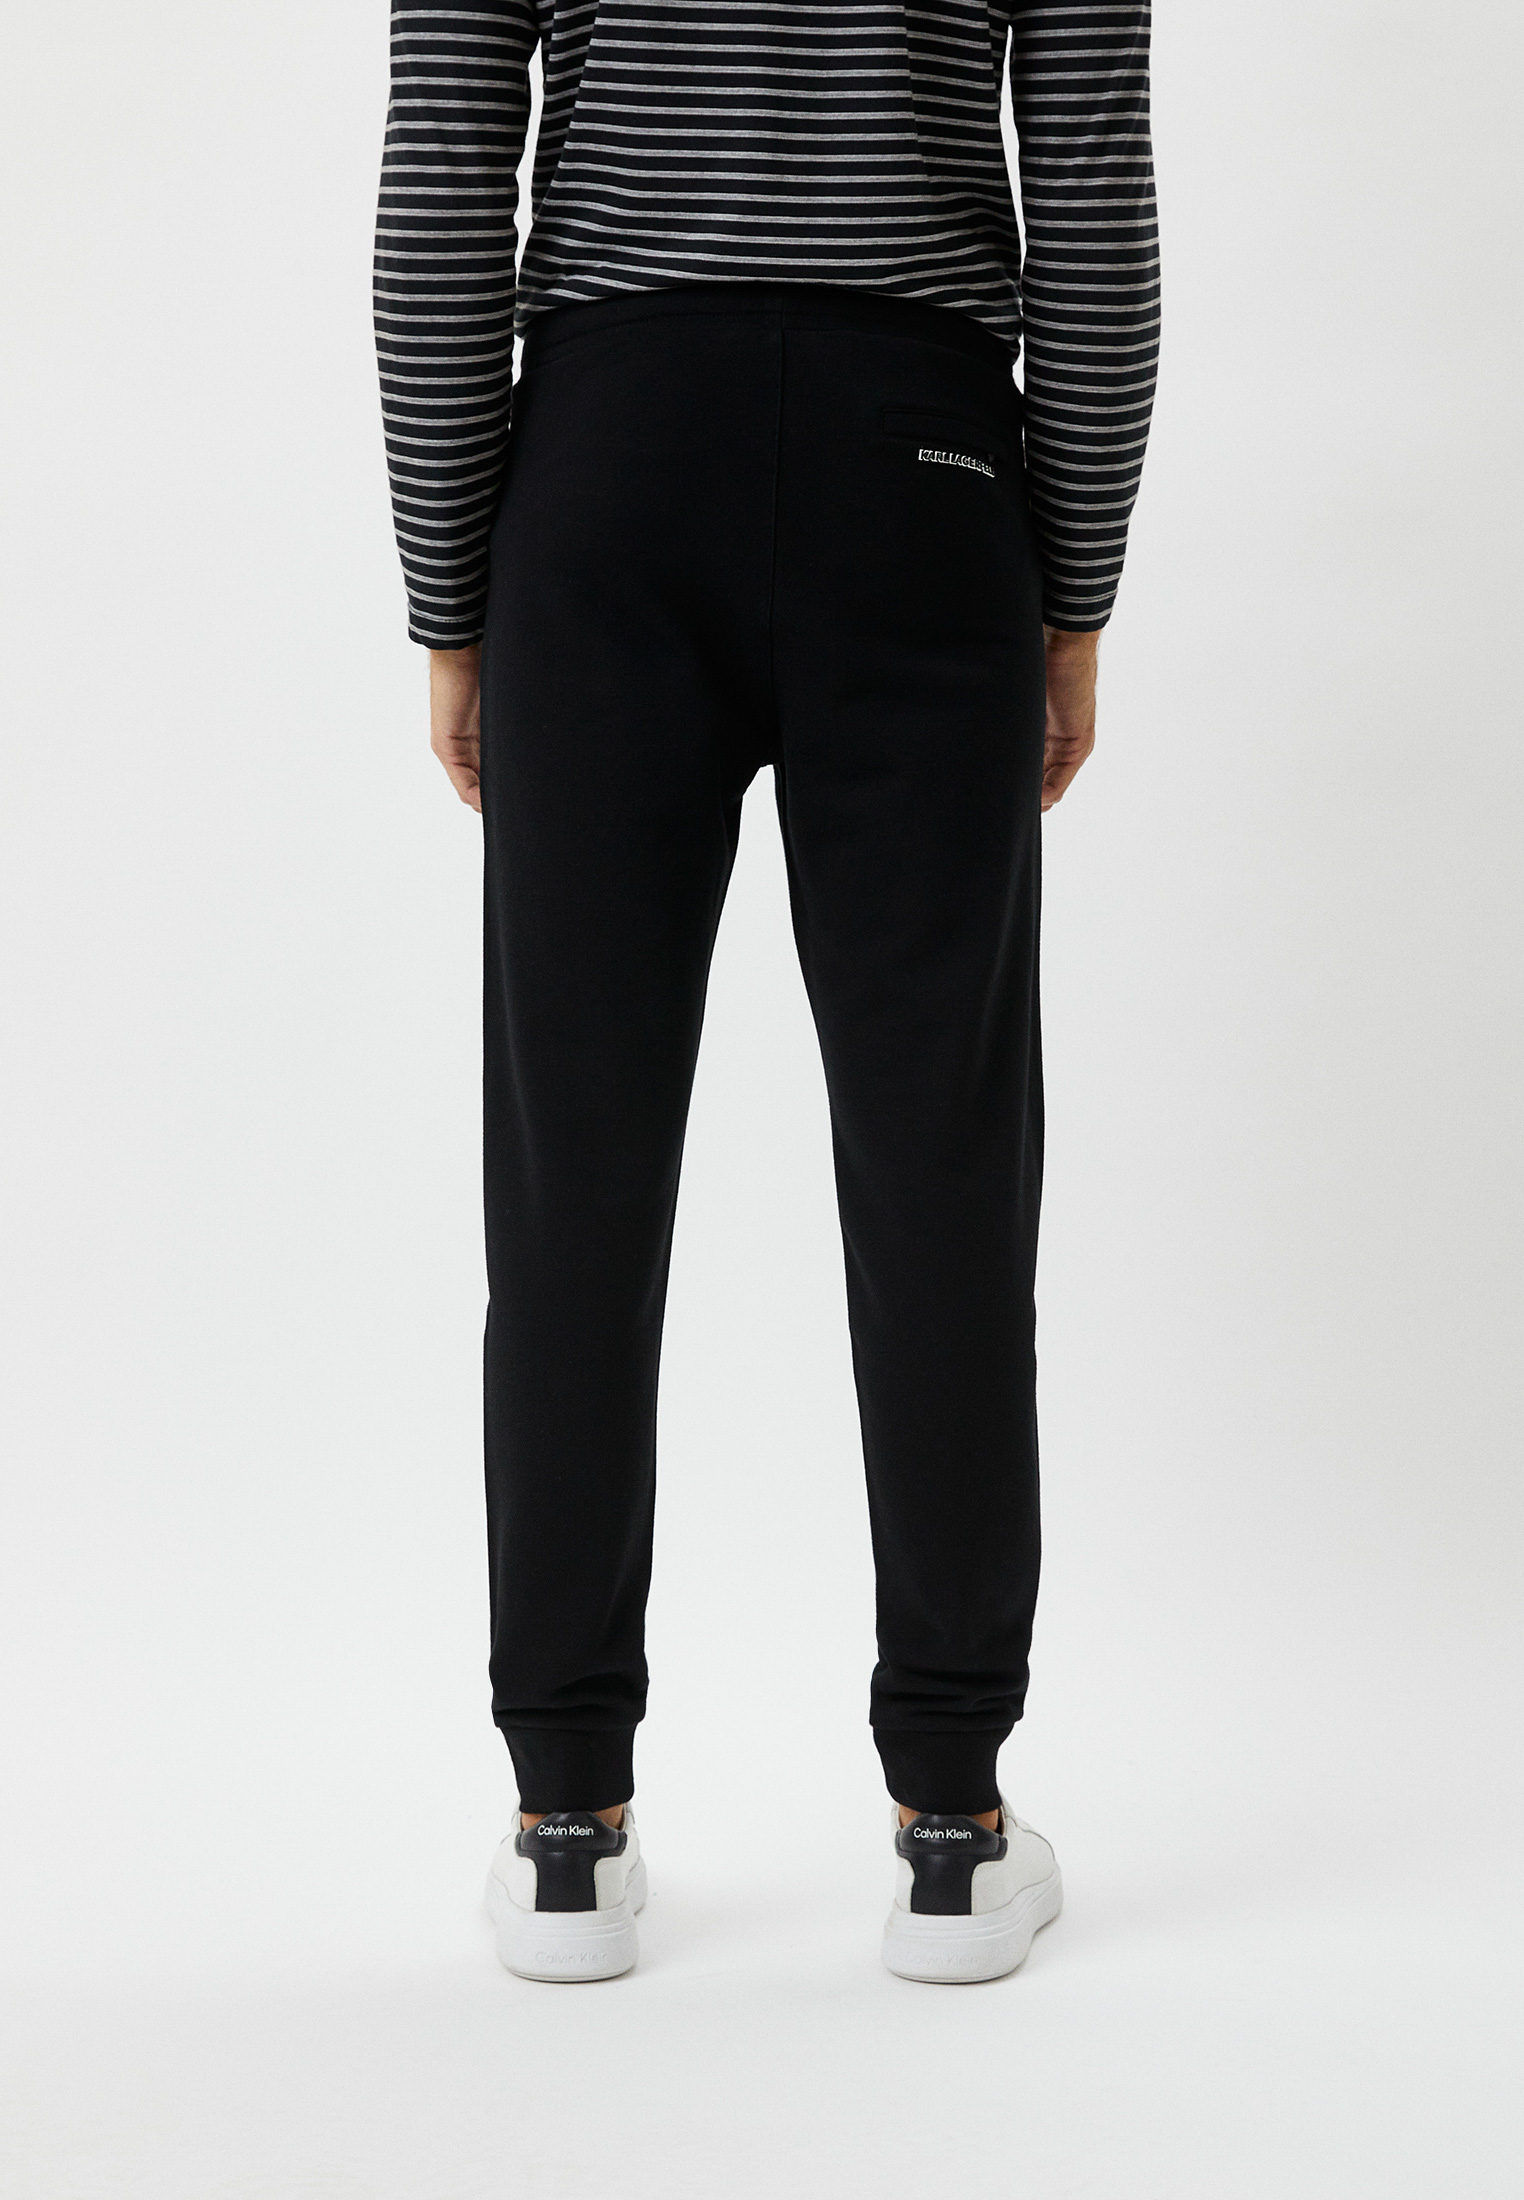 Мужские спортивные брюки Karl Lagerfeld (Карл Лагерфельд) 705011-524910: изображение 3